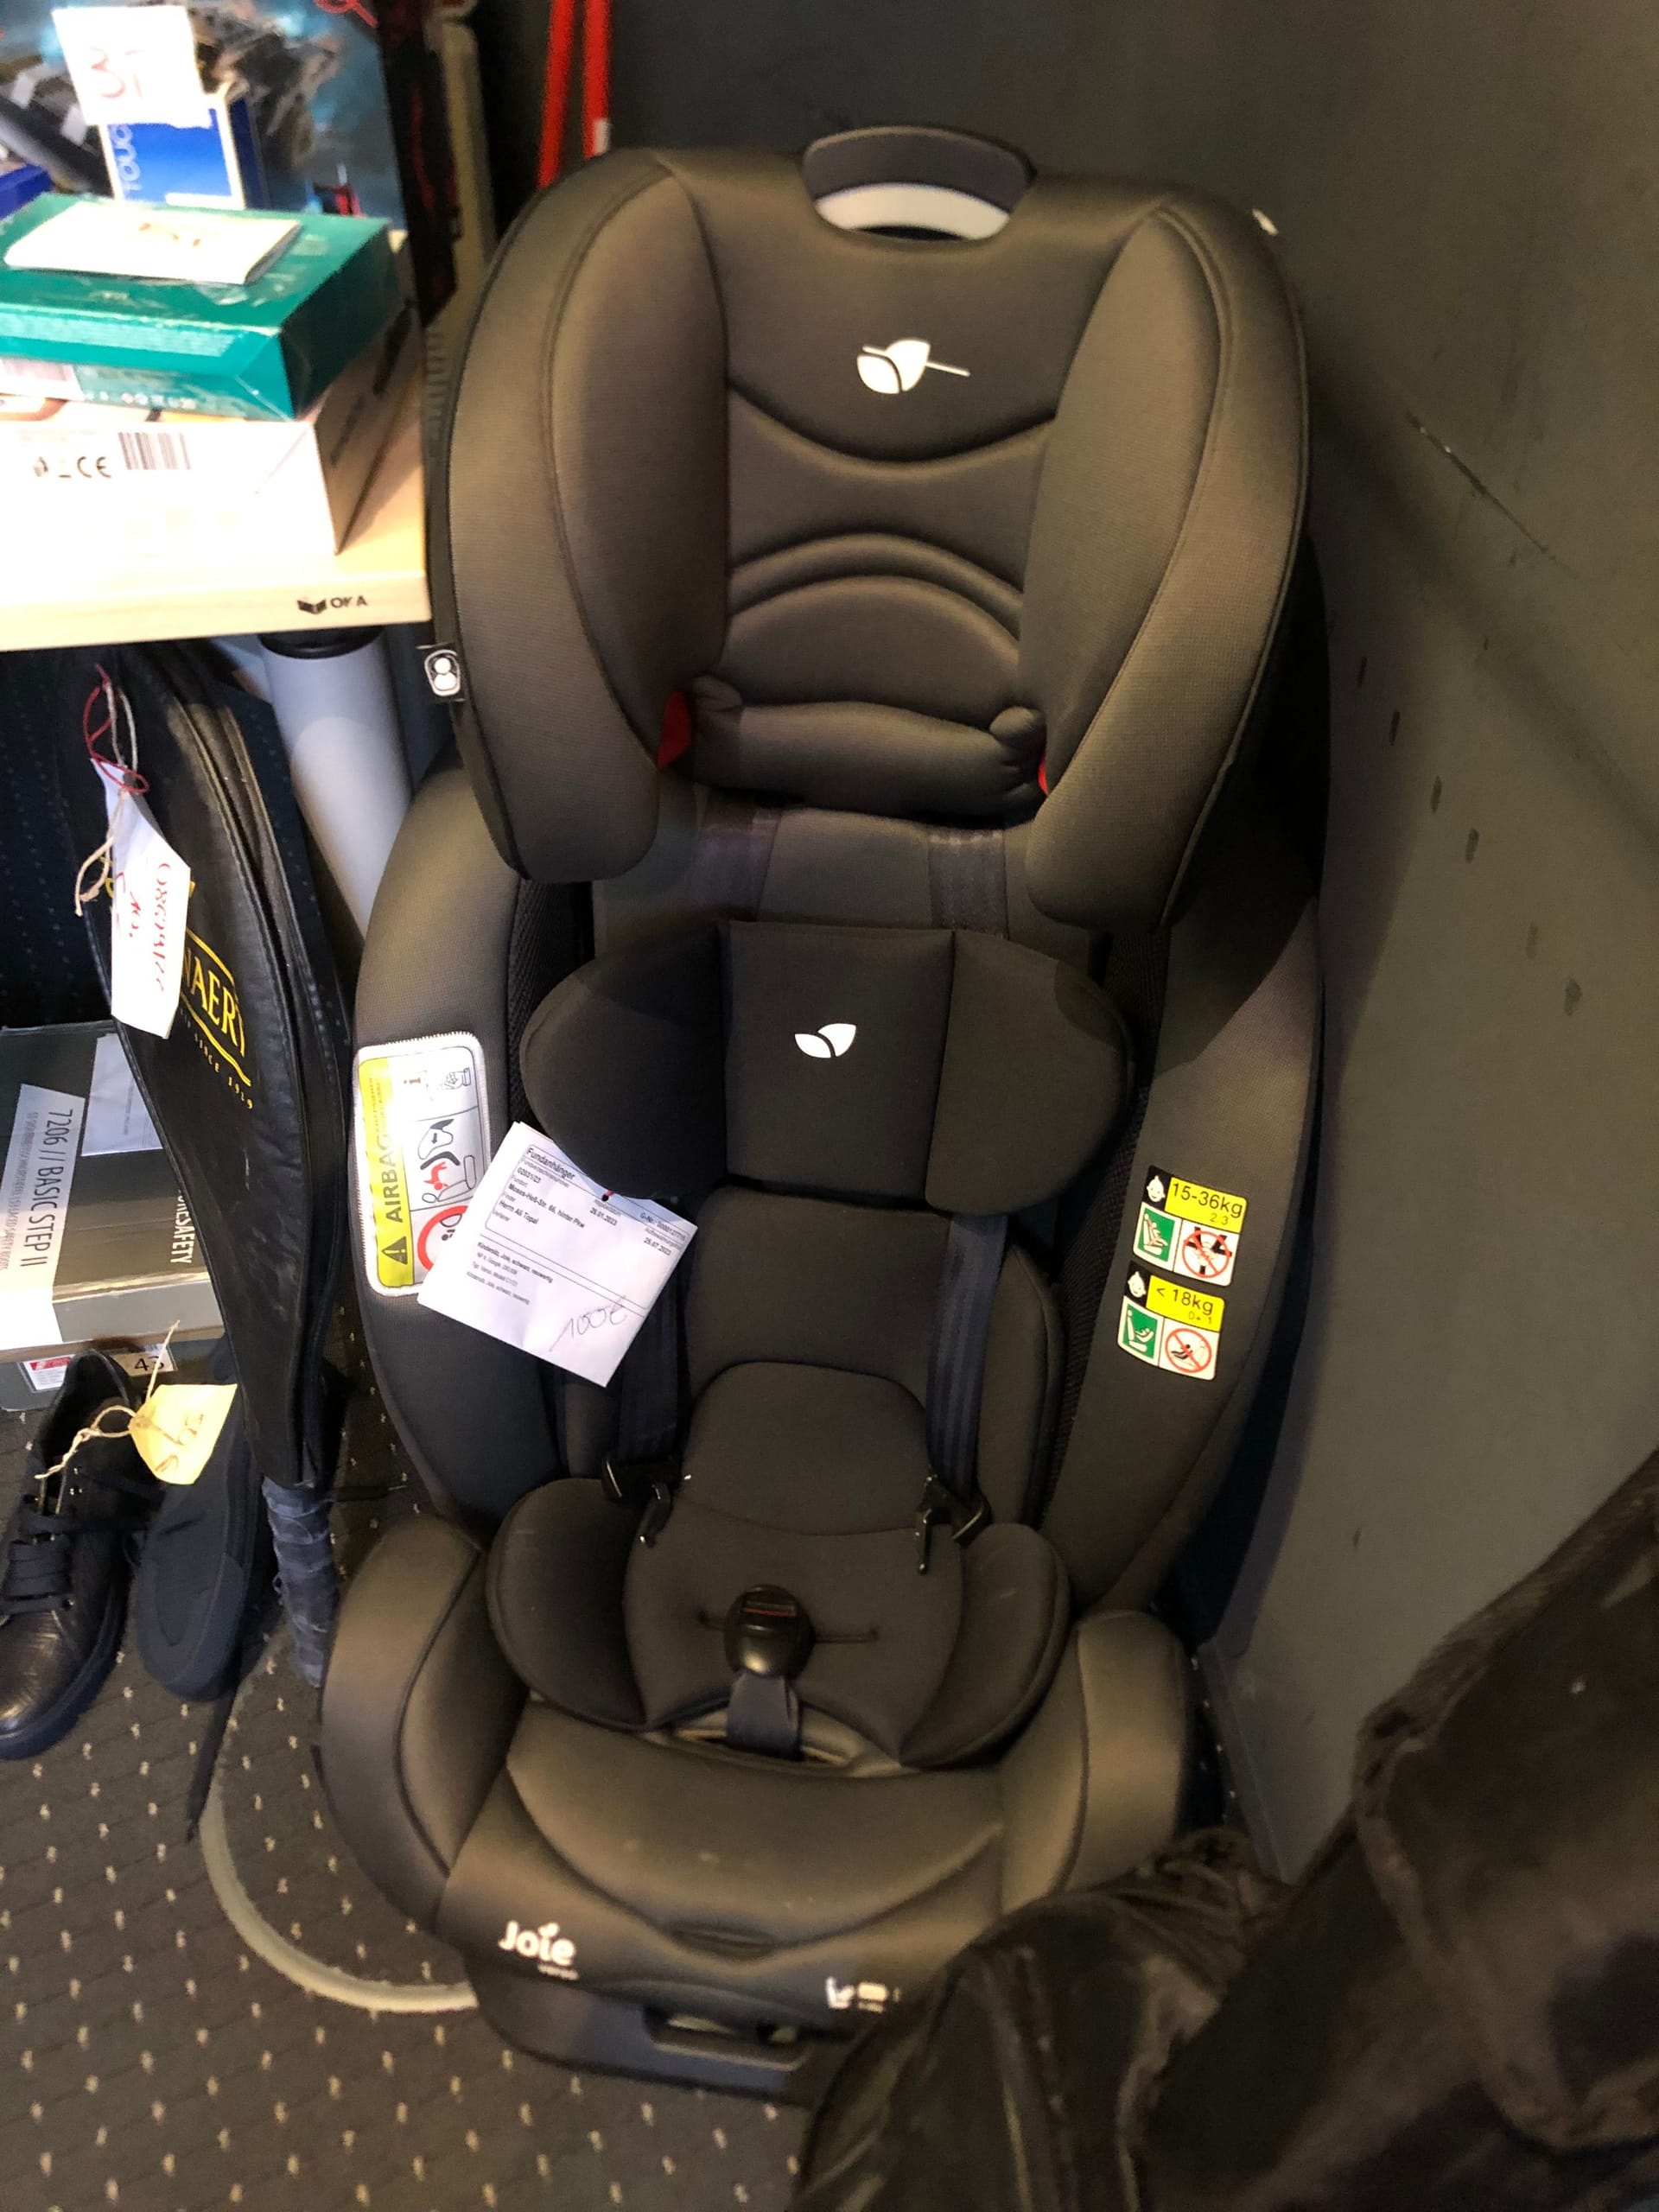 Kindersitz fürs Auto: Wer diesen Kindersitz wohl verloren oder vergessen hat?